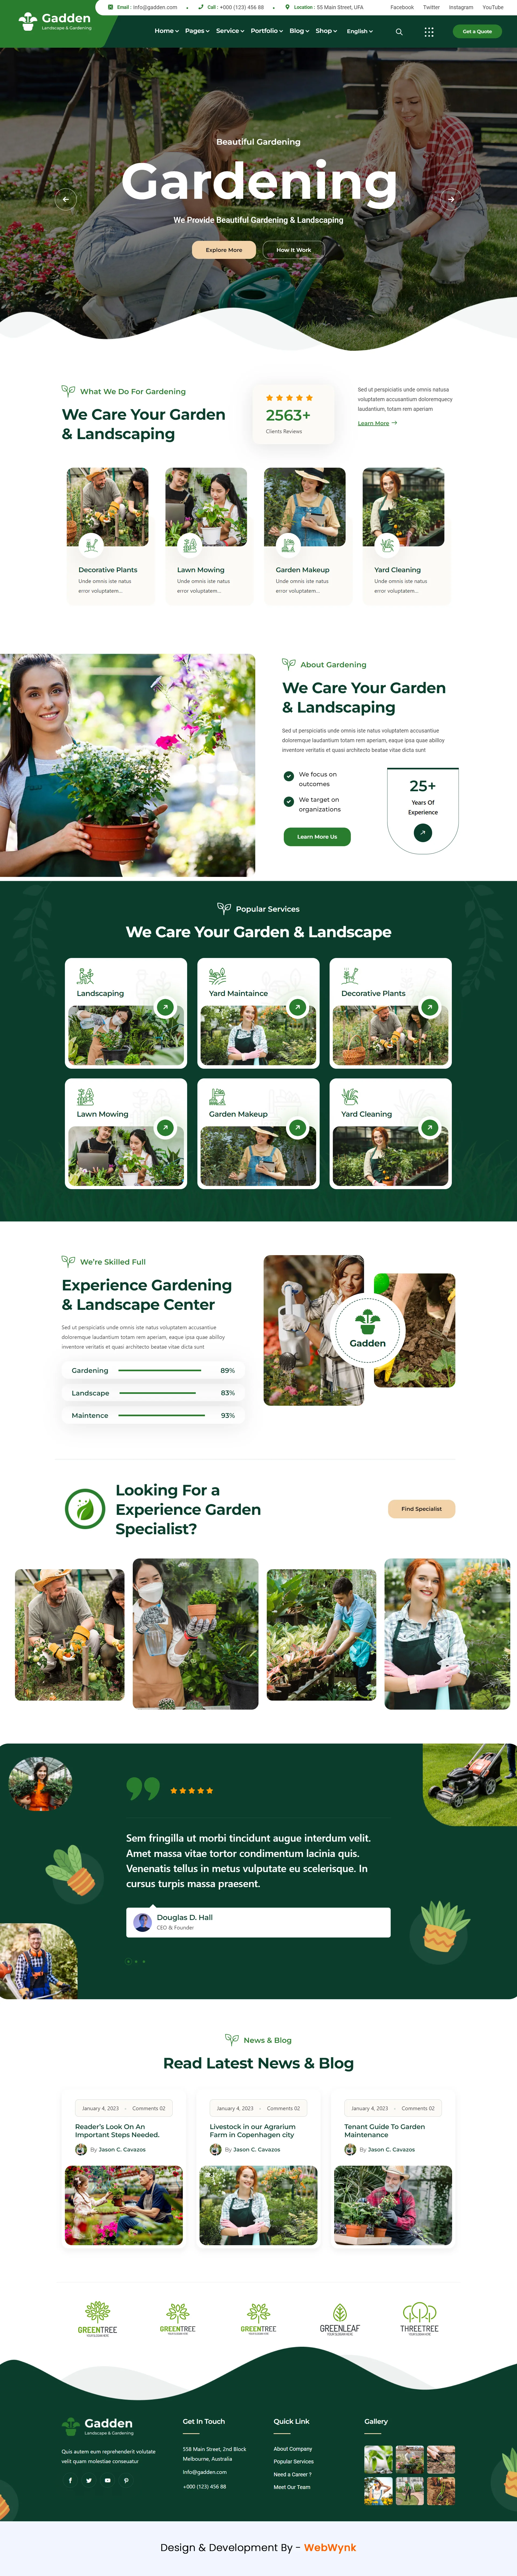 landscaping-service-website-design-webwynk